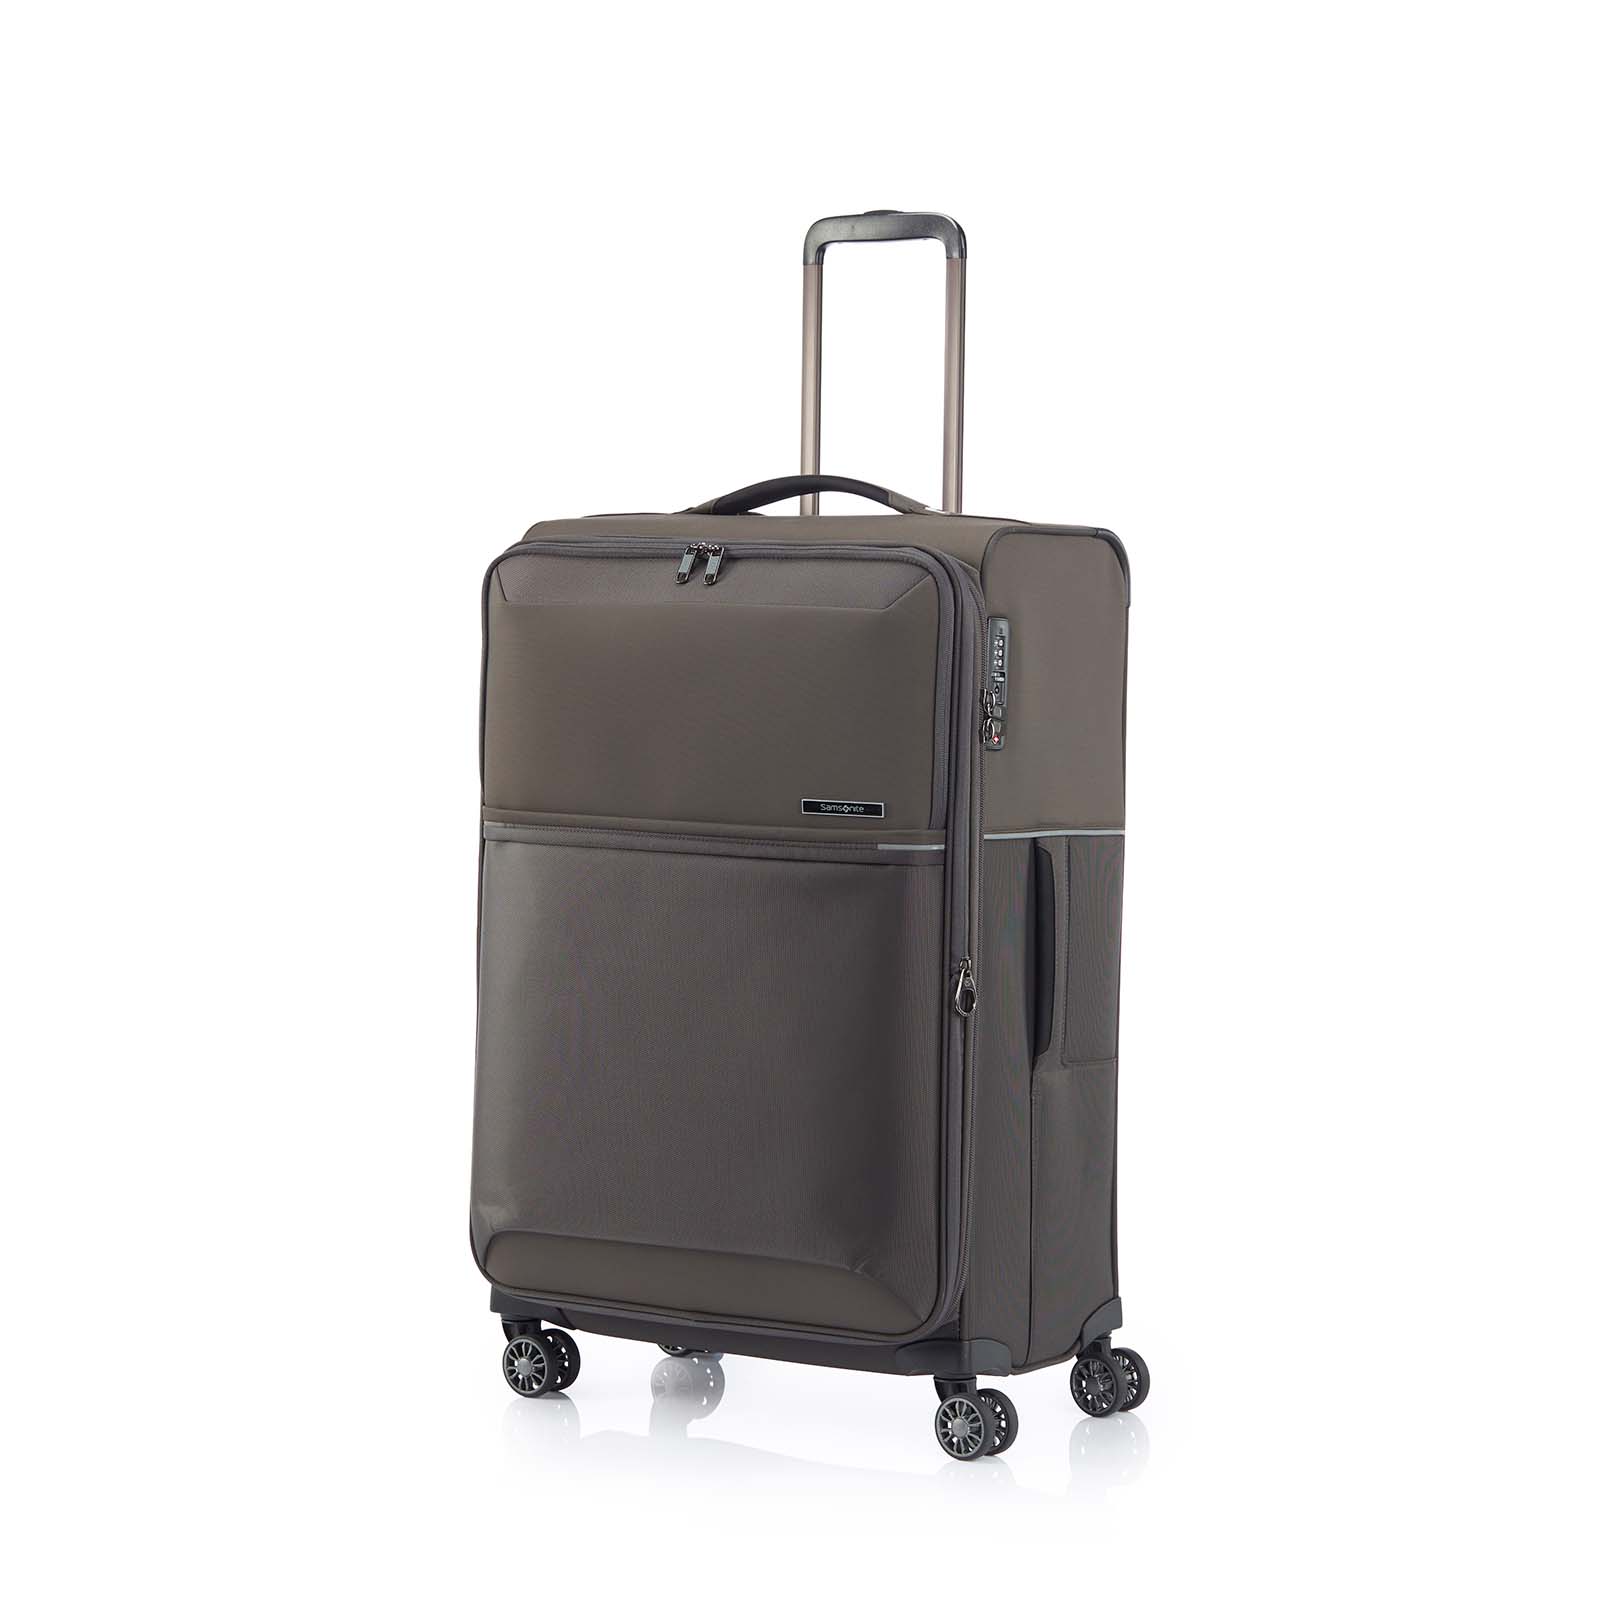 Samsonite-73h-71cm-Suitcase-Platinum-Grey-Front-Angle